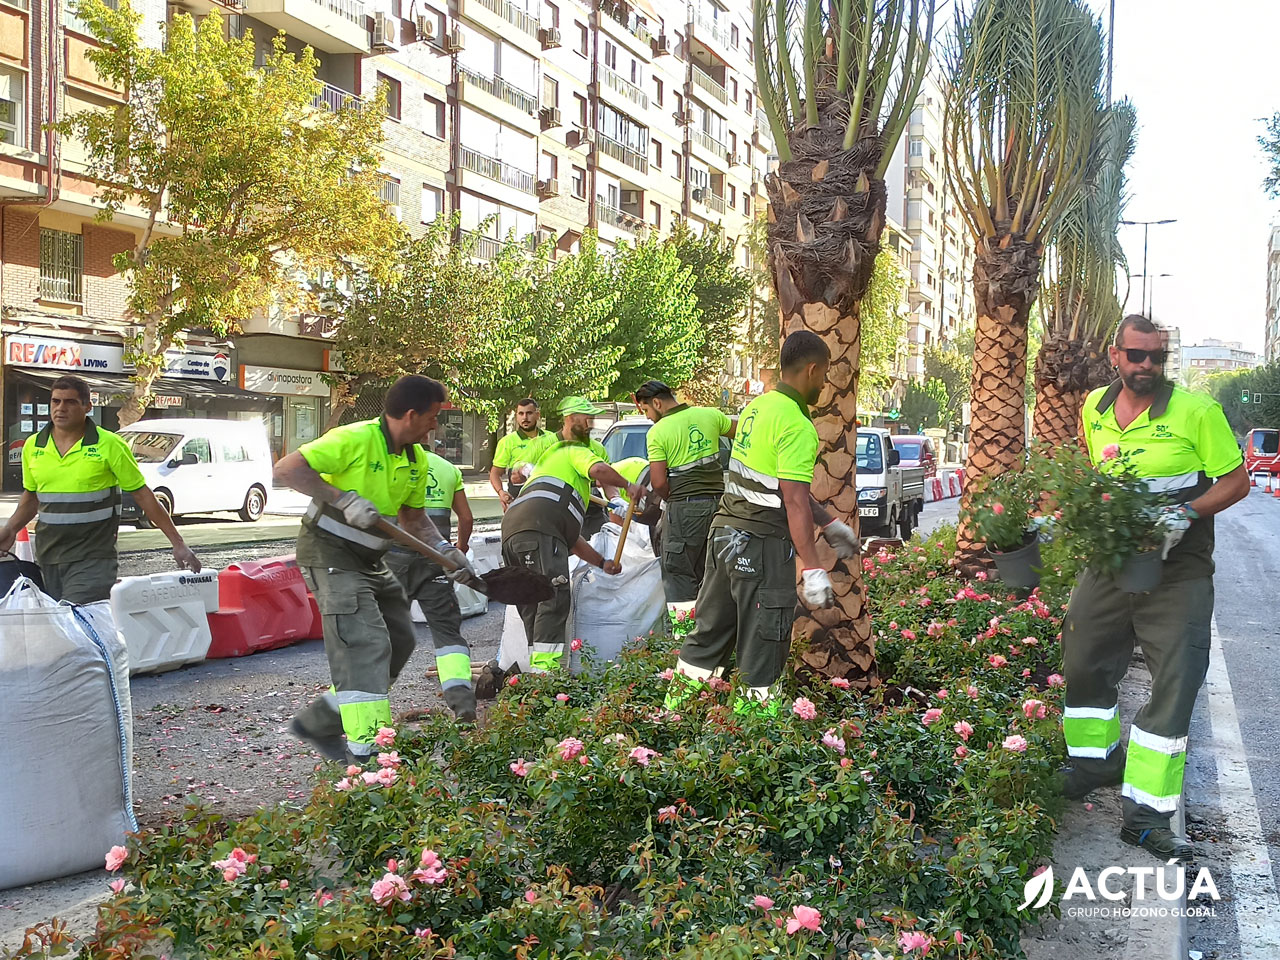 Actúa suministra más de 120.000 plantas en flor para embellecer Murcia de cara a la Feria de Septiembre